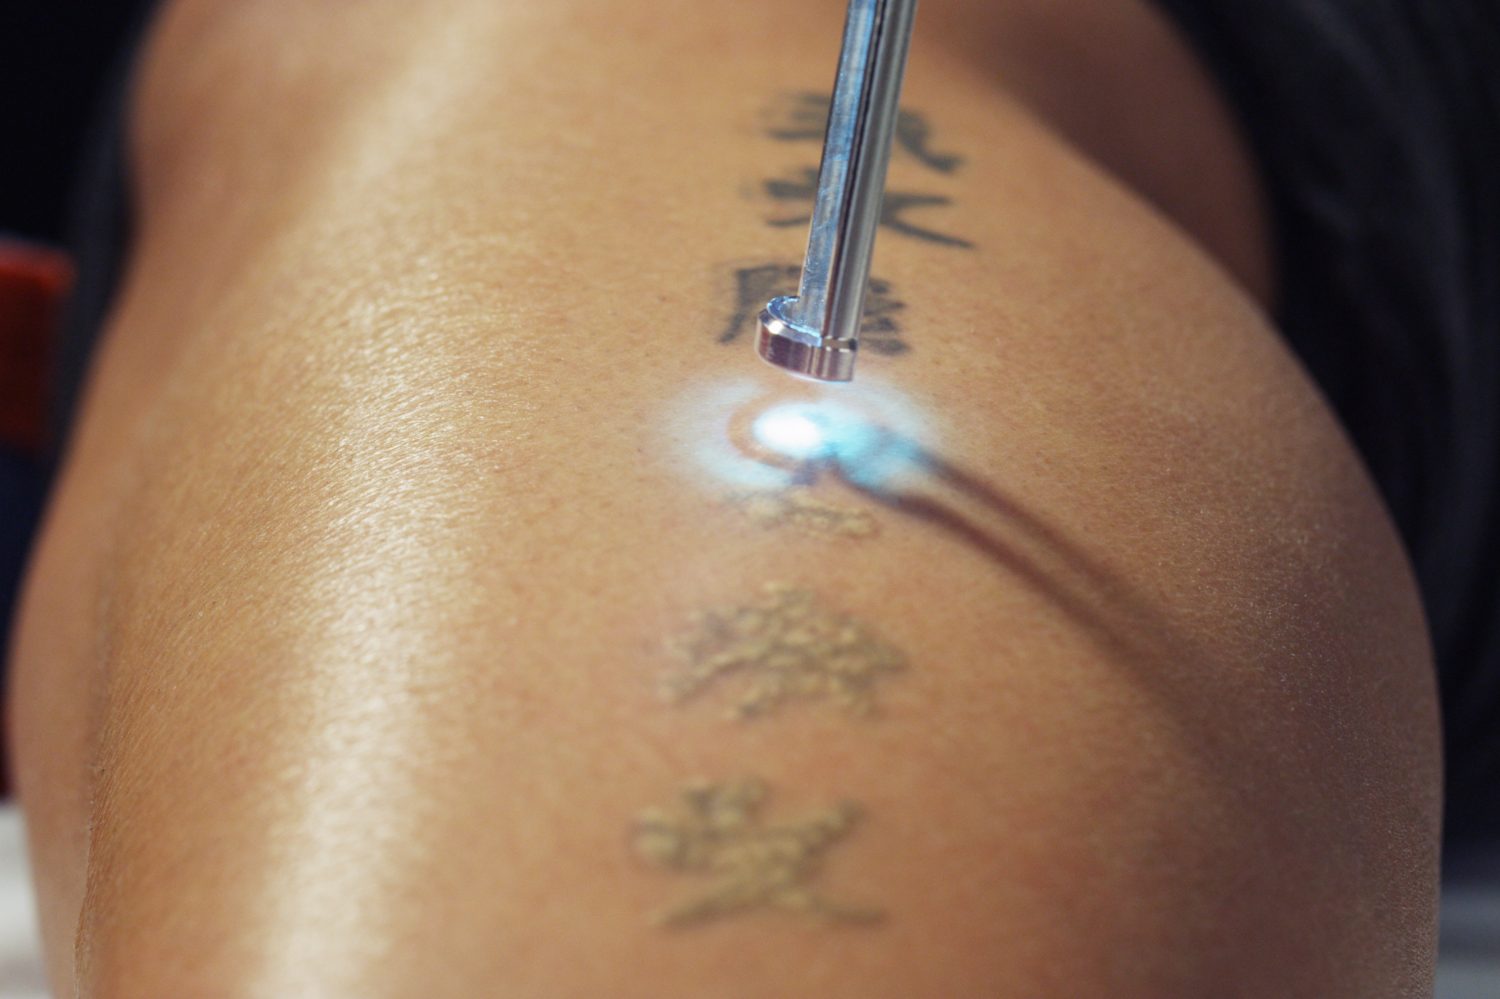 Tatoeages zijn een populair lichaamsversiering, maar de gevolgen van een tatoeage kunnen verstrekkender zijn dan je in eerste instantie verwacht. Tatoeages zijn namelijk in principe permanent en kunnen grote schade aanrichten aan de huid.